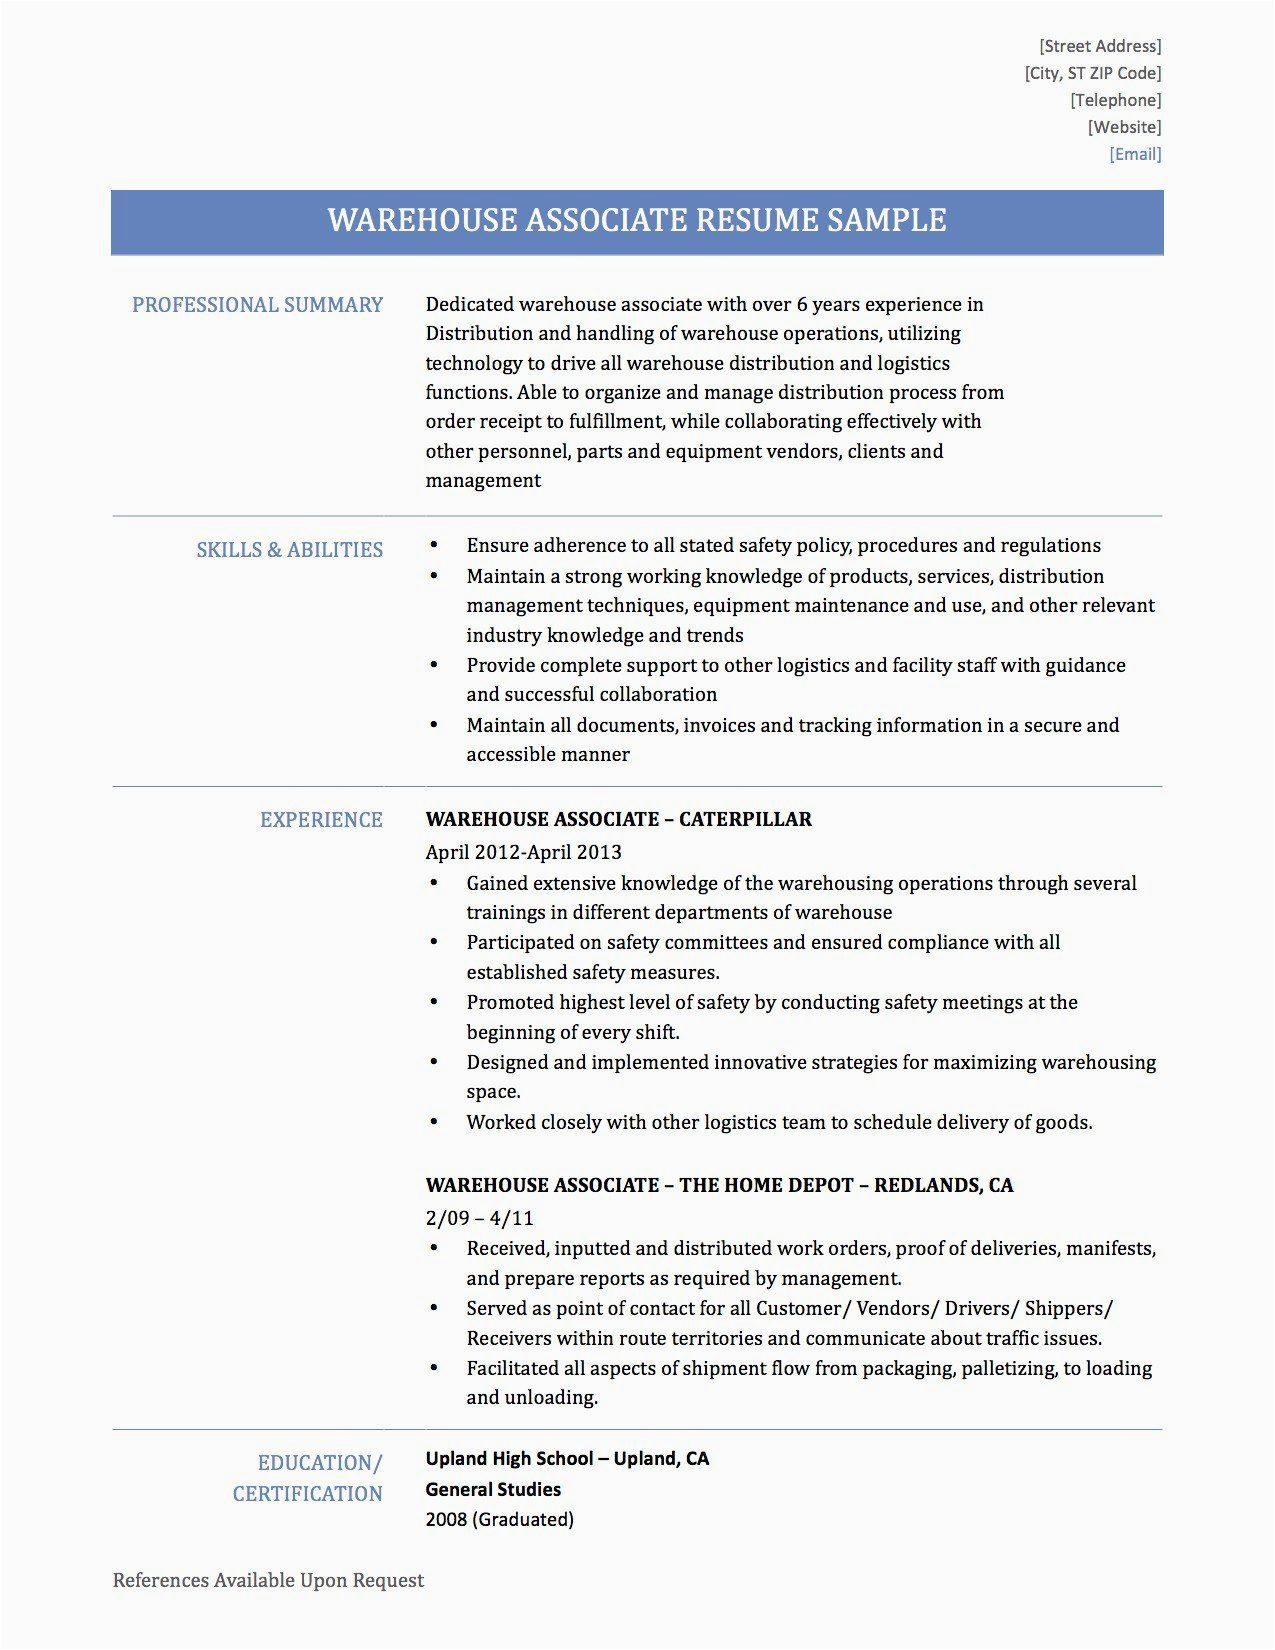 Sample Resume for Warehouse Supervisor Position Warehouse Supervisor Resume Sample Best Resume Examples